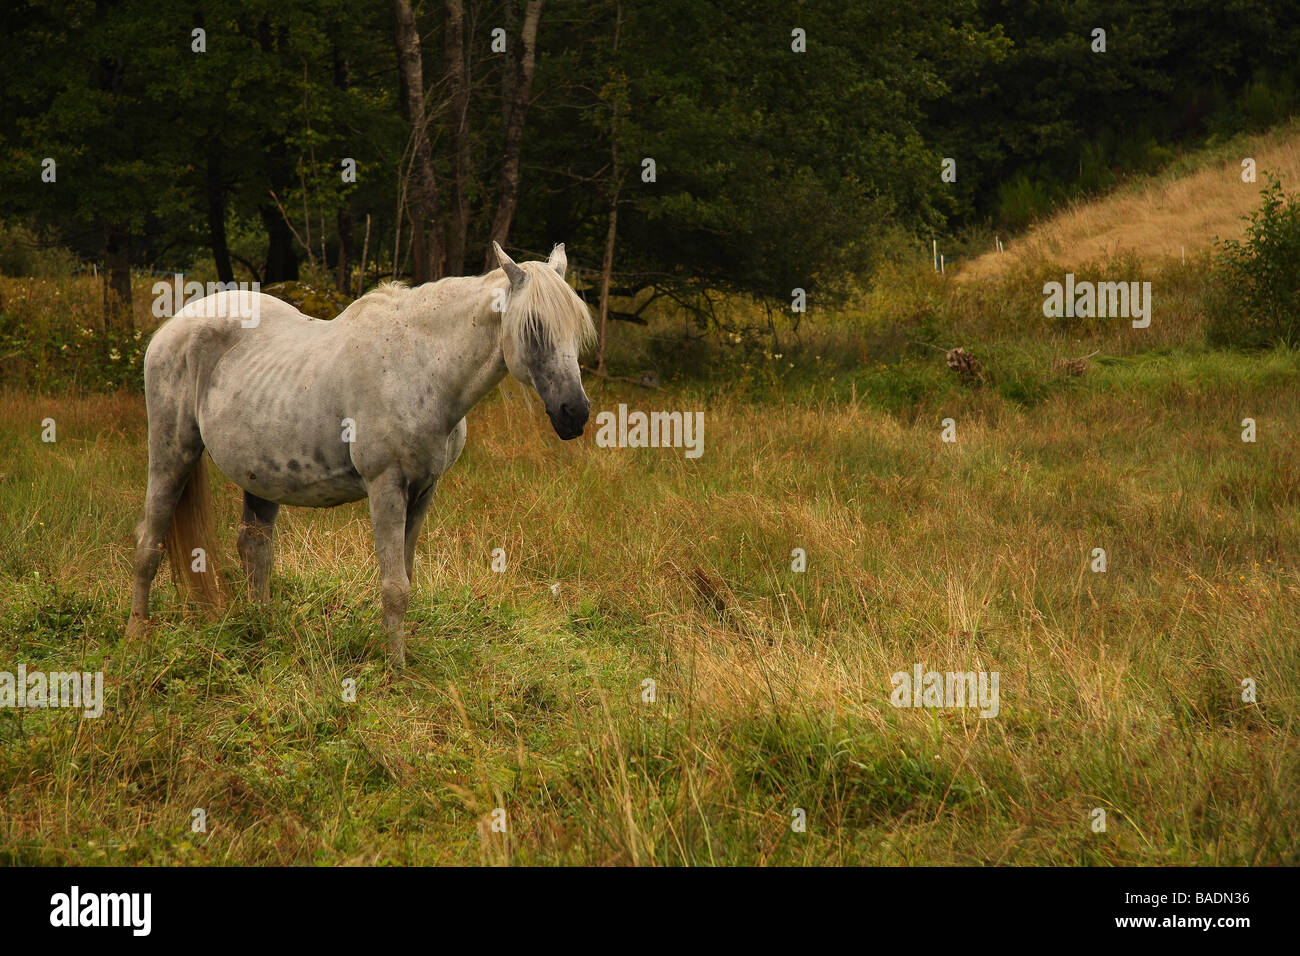 Un vieux cheval gris dans un champ Limousin France Banque D'Images